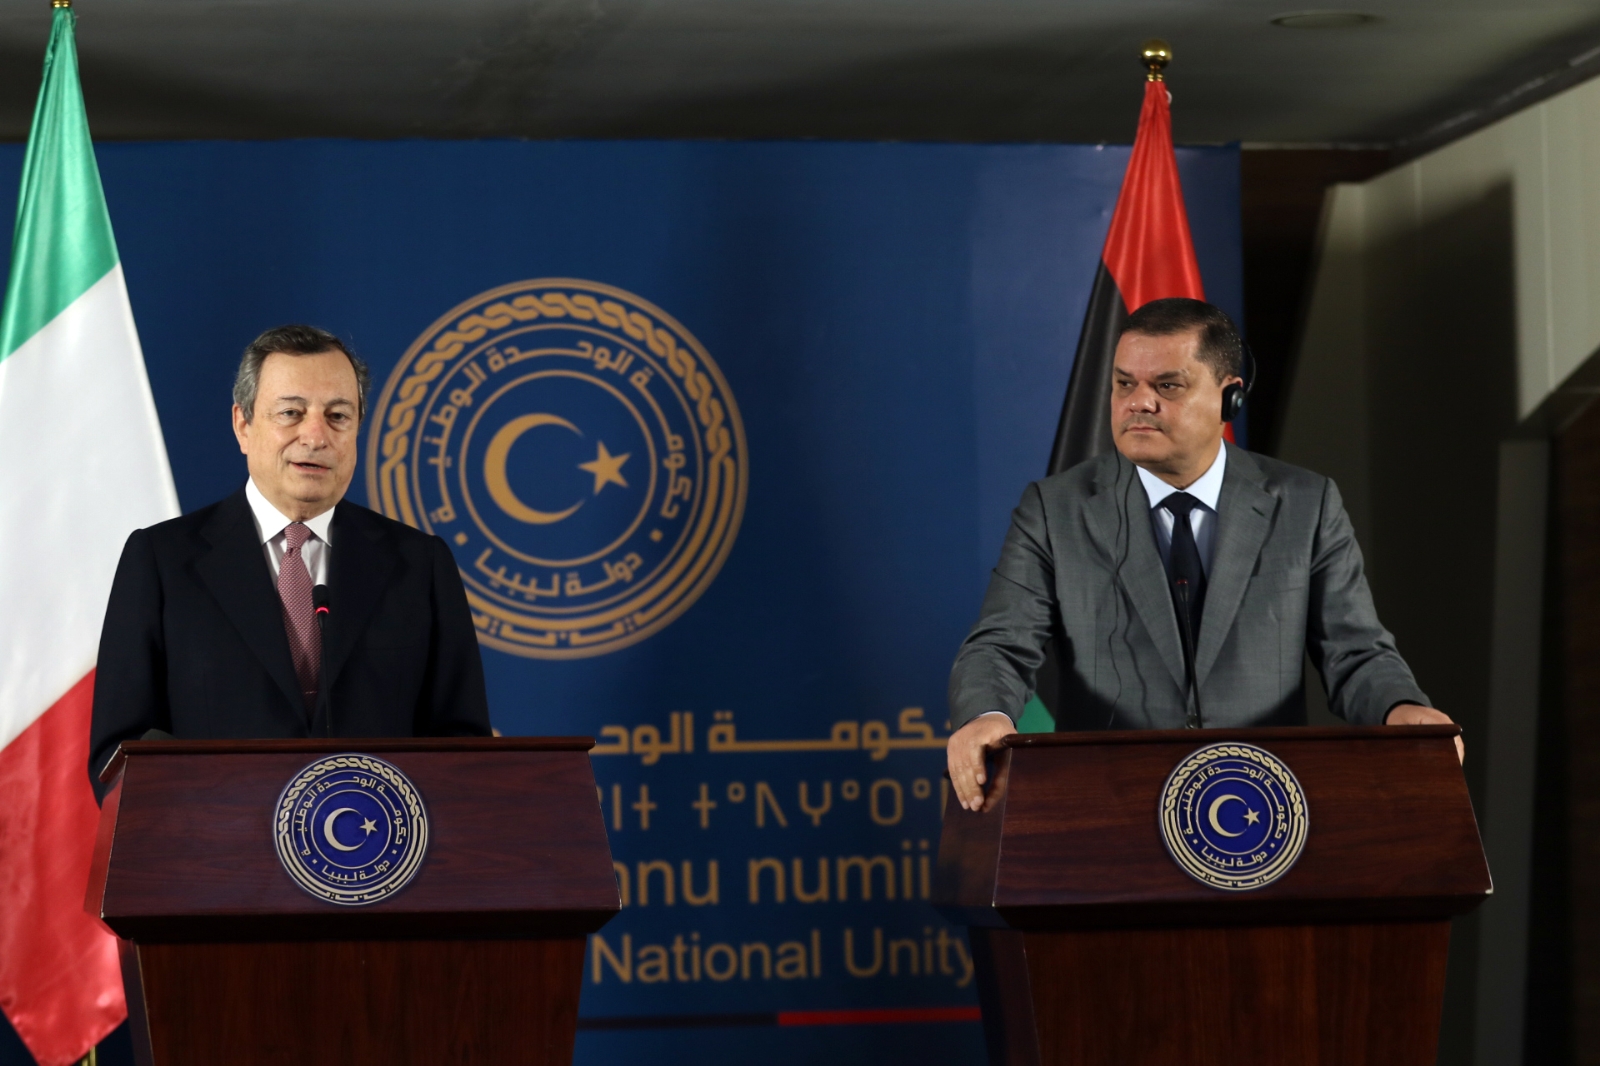 İtalya Başbakanı Mario Draghi, Libya Ulusal Birlik Hükümeti Başbakanı Dibeybe ile görüştü